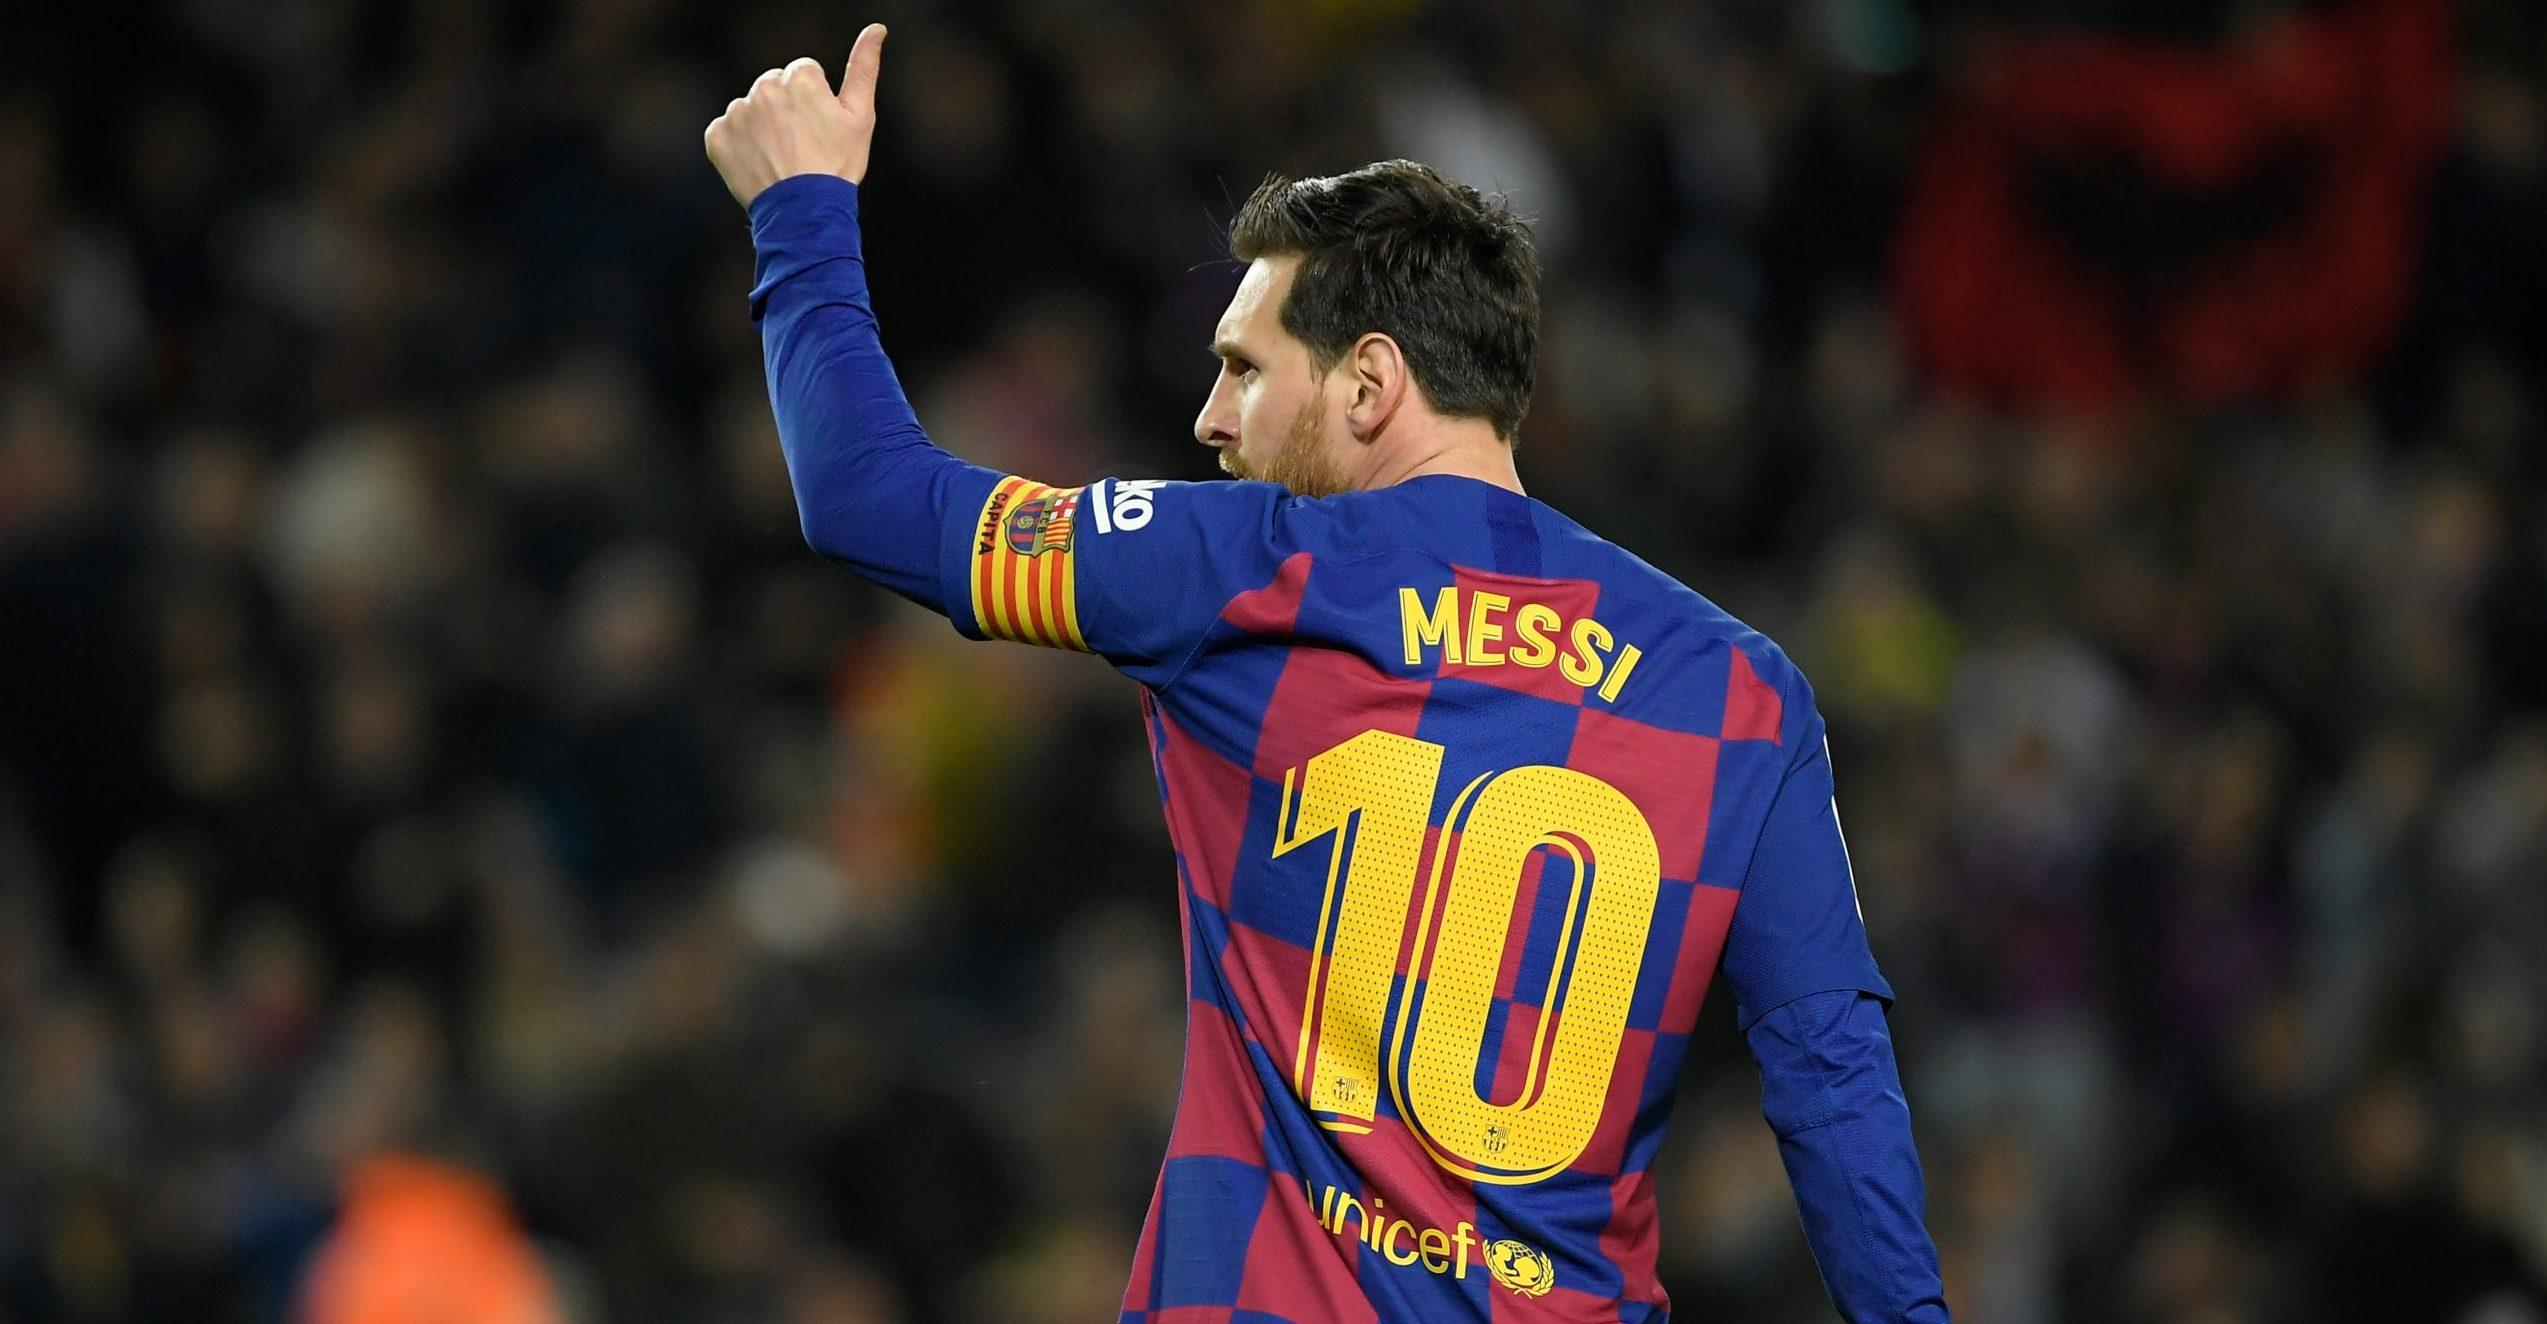 “Es el club que amo”: Messi se queda en el Barcelona y evita juicio con el equipo